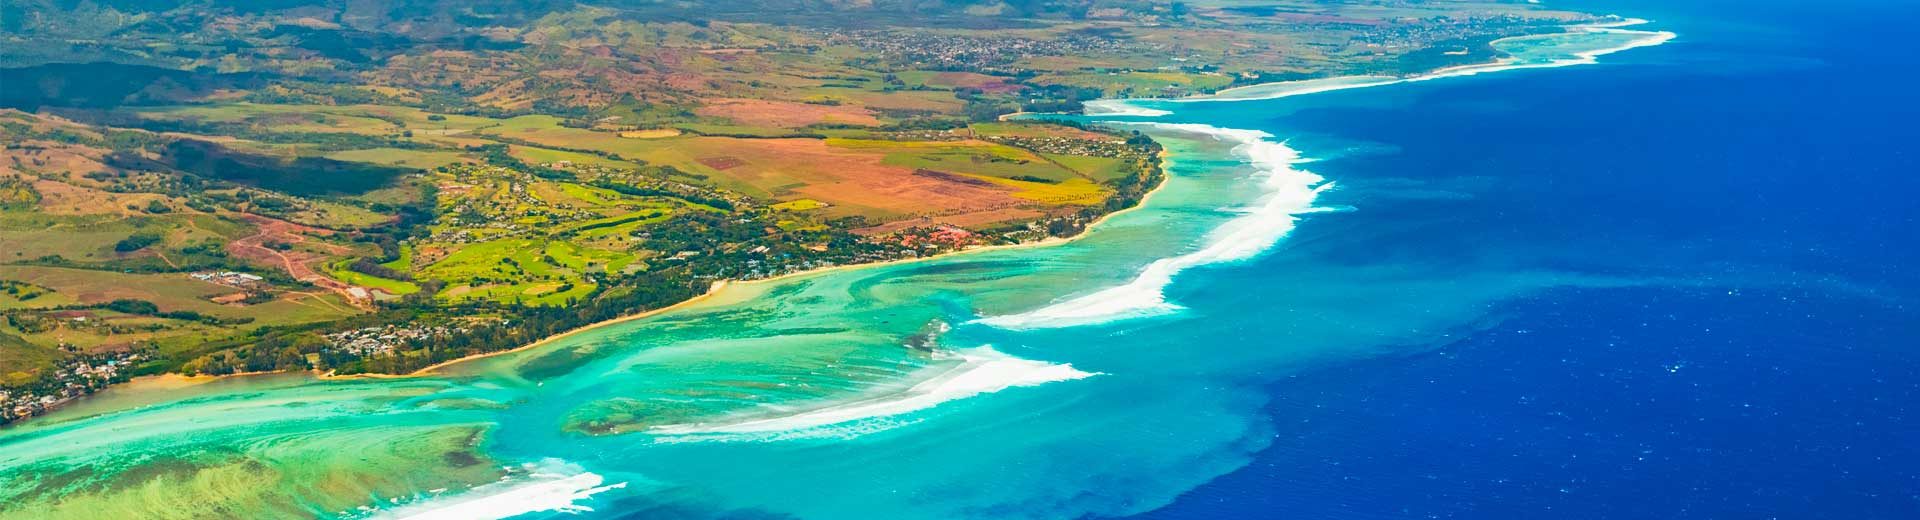 pontos turisticos ilha mauricio